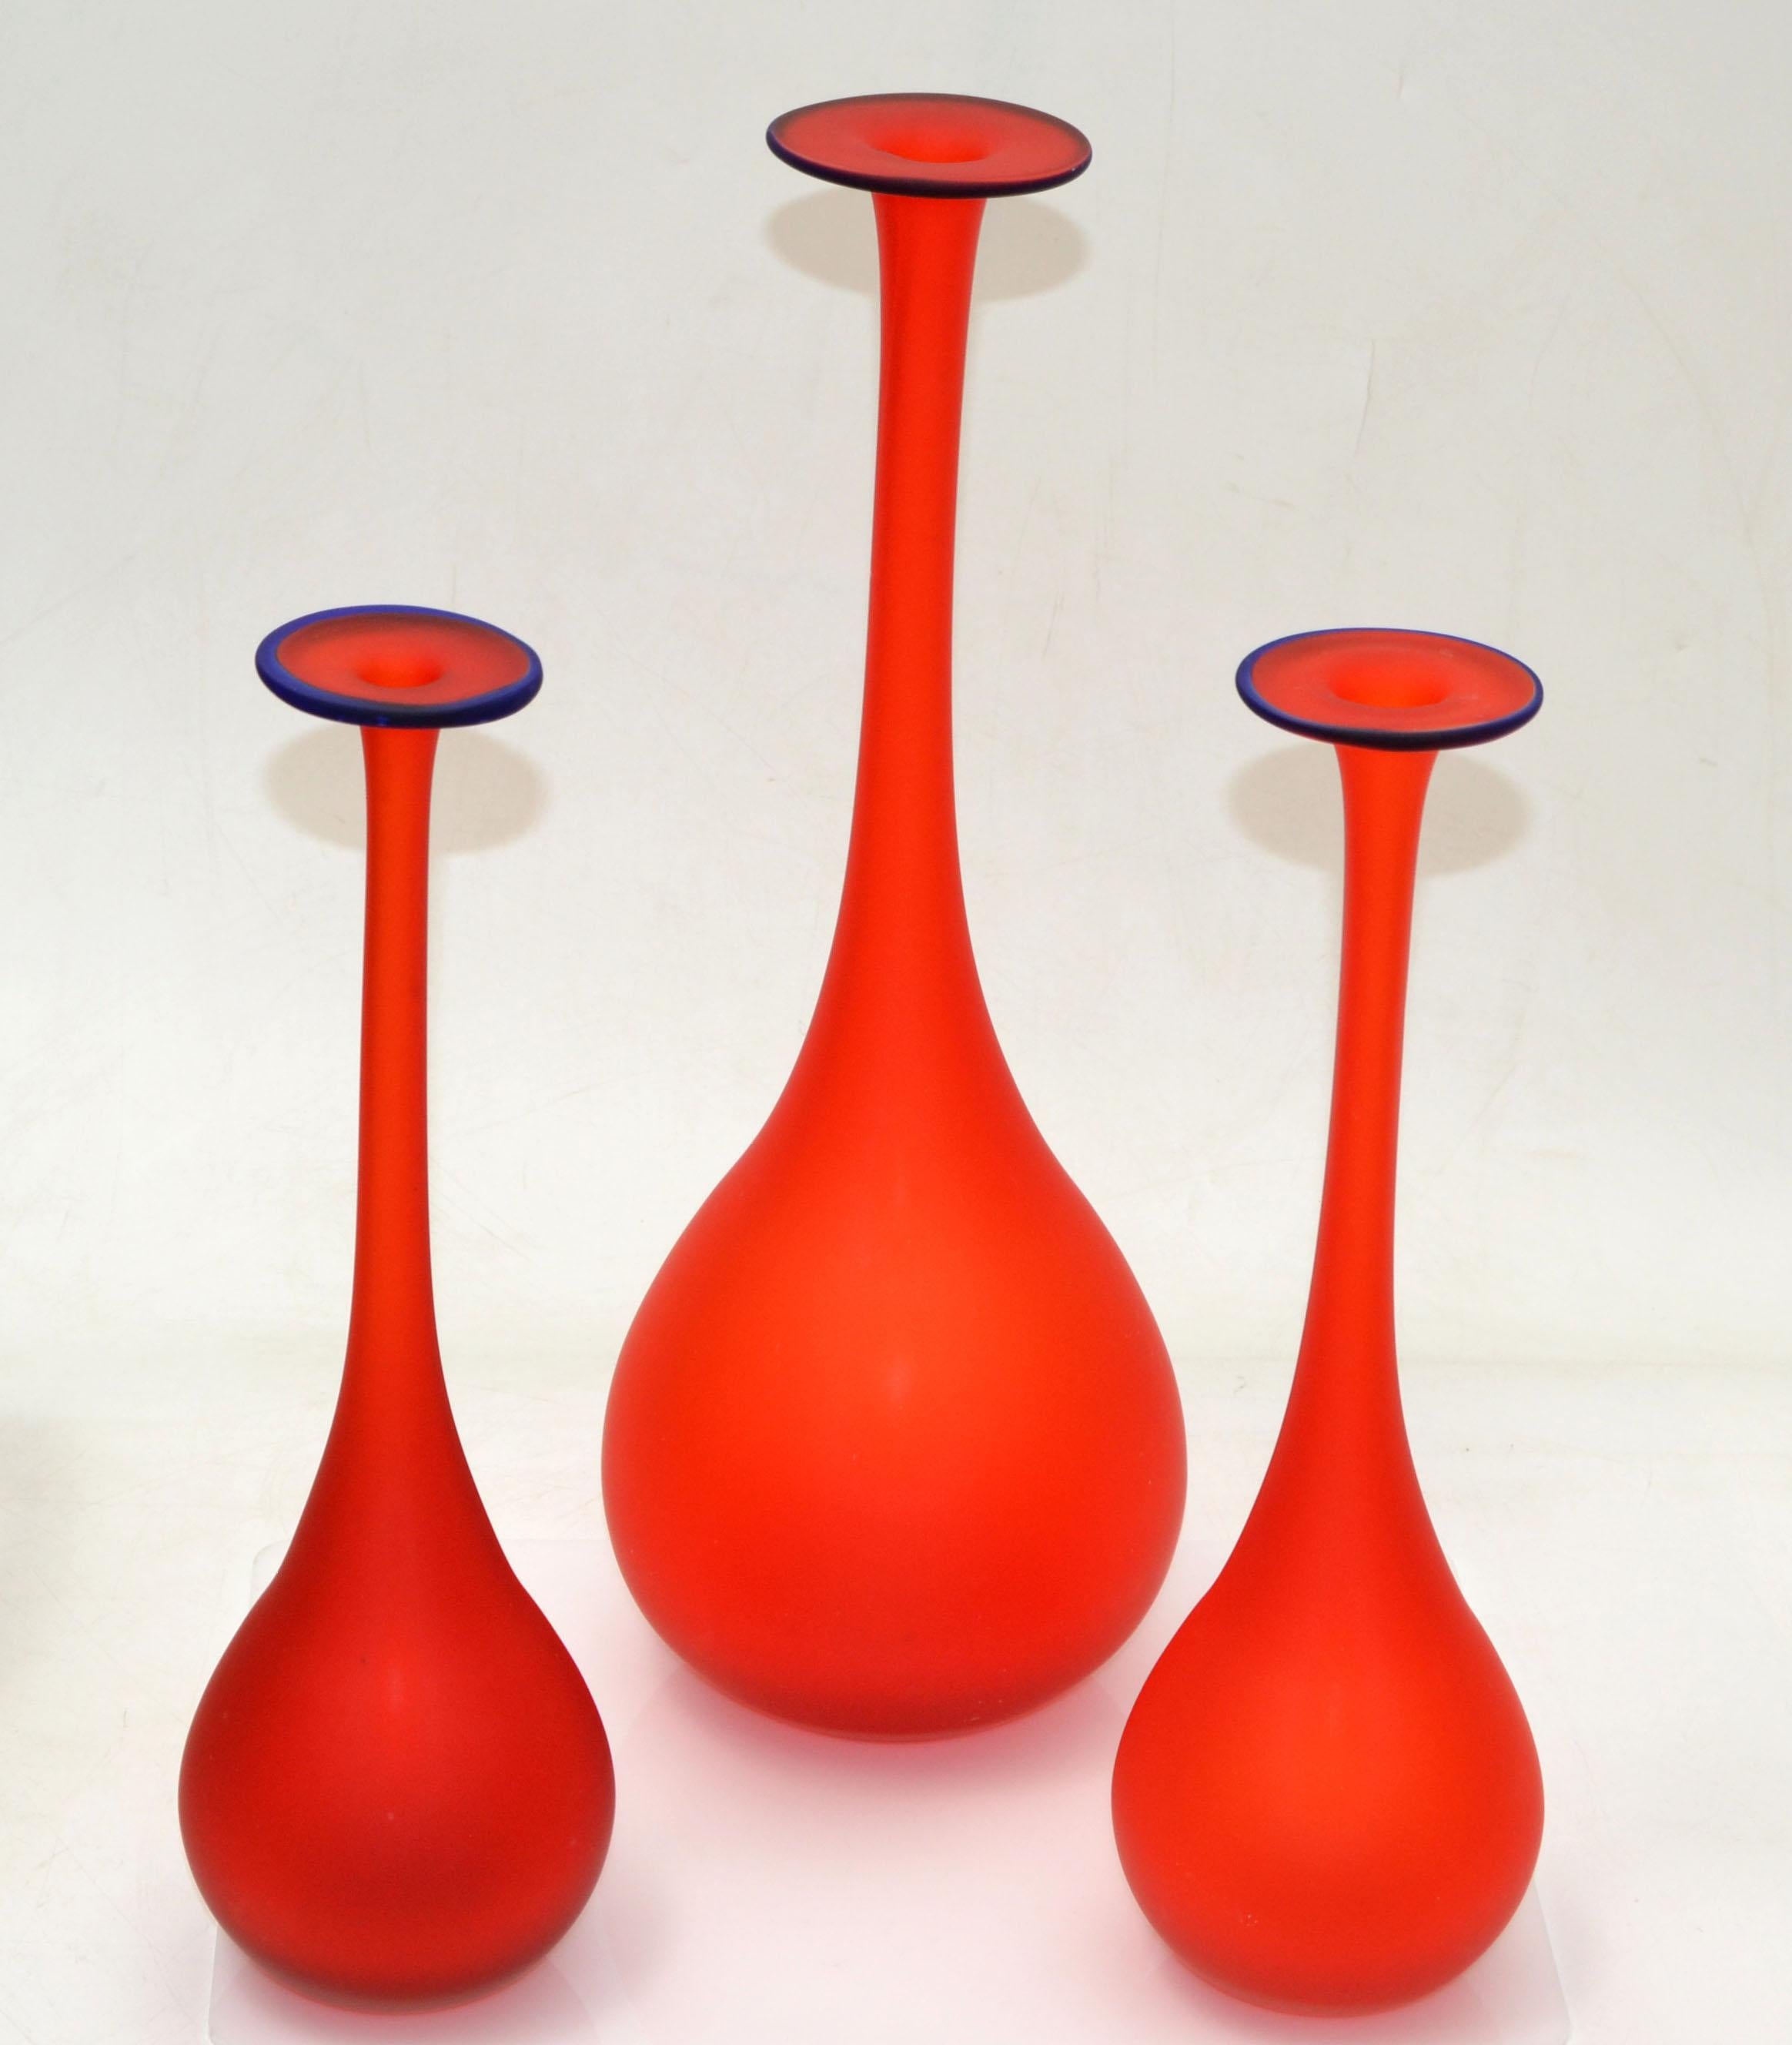 Ensemble de 3 vases en verre satiné de style Carlo Moretti Mid-Century Modern en rouge translucide avec une ouverture bleue.
Set d'emboîtement, les plus petits ont un diamètre de 3,5 pouces, hauteur 11,5 et 12 pouces.
Un design très beau et